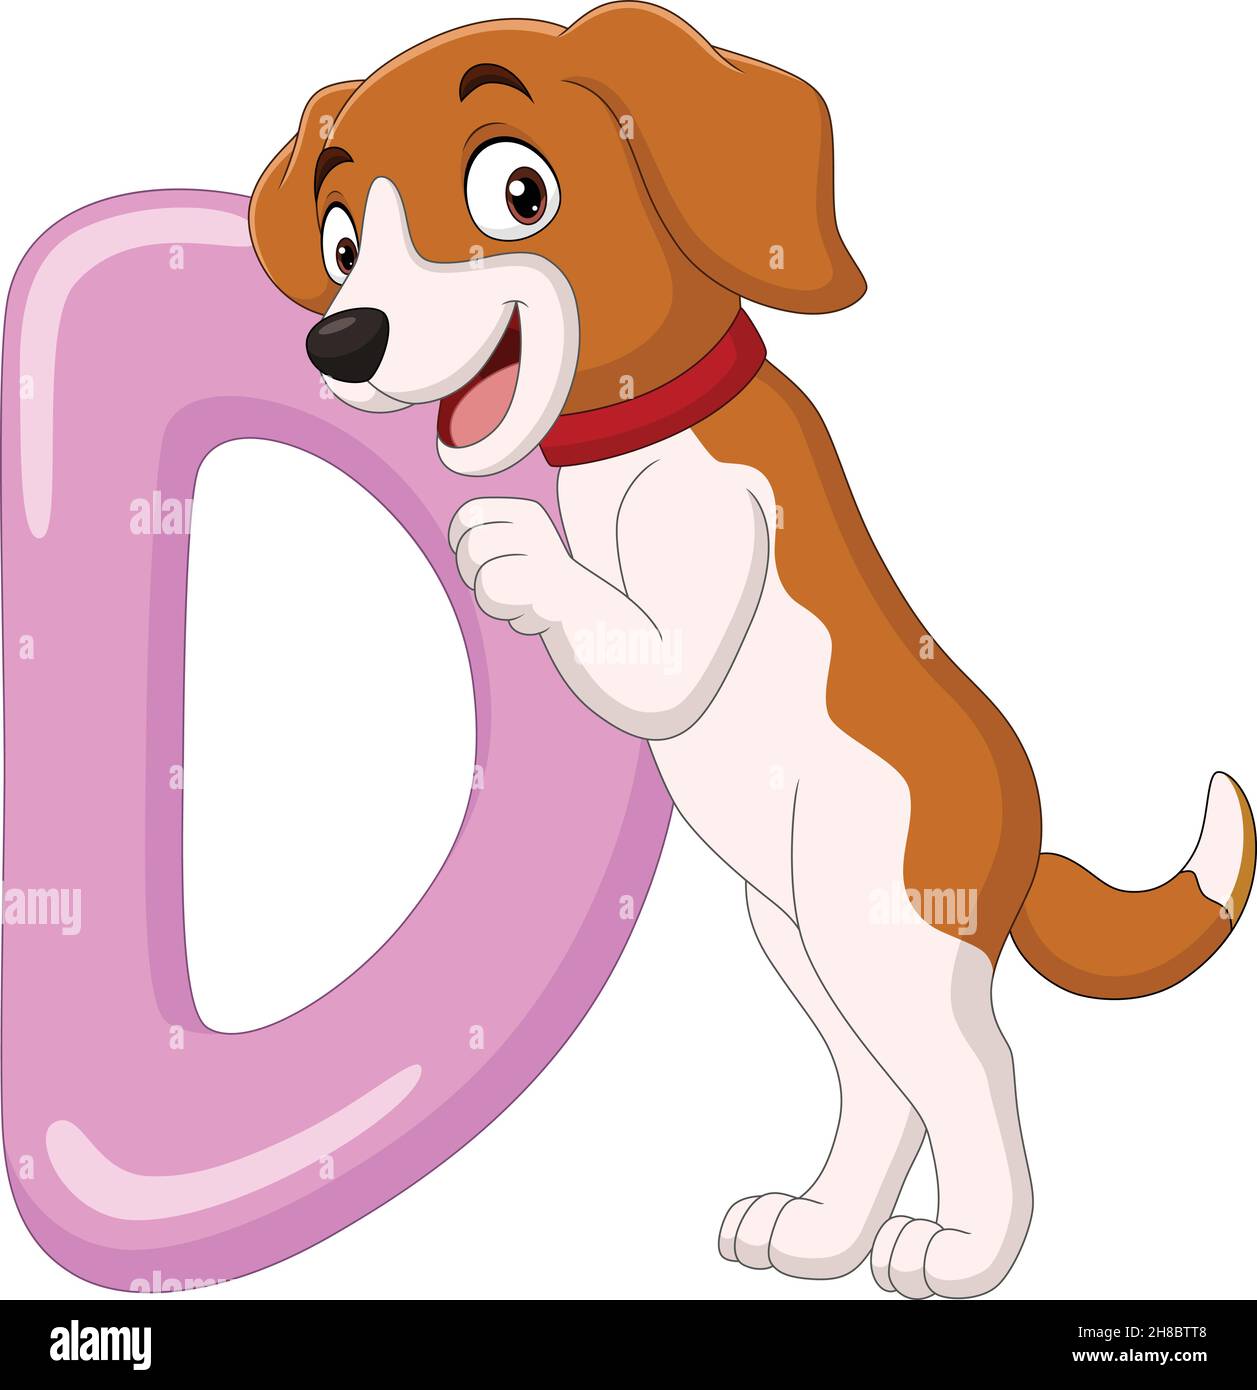 Alphabet letter D for Dog Stock Vector